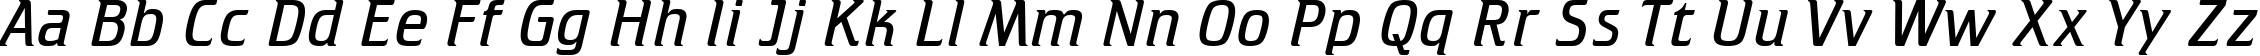 Пример написания английского алфавита шрифтом font128